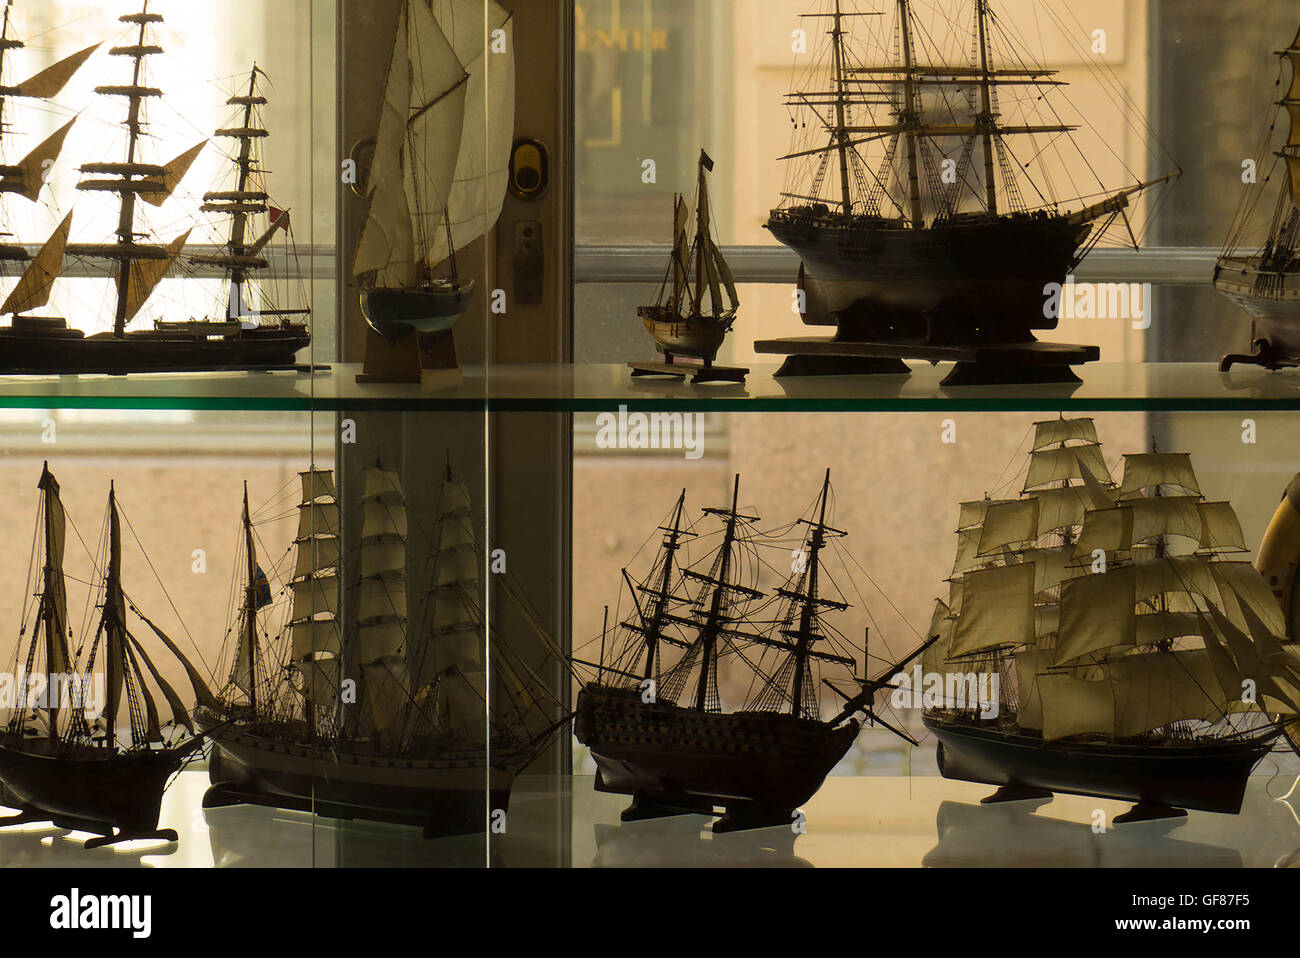 Maquettes de bateaux dans la fenêtre de l'Hotel Stockholm, Suède Banque D'Images